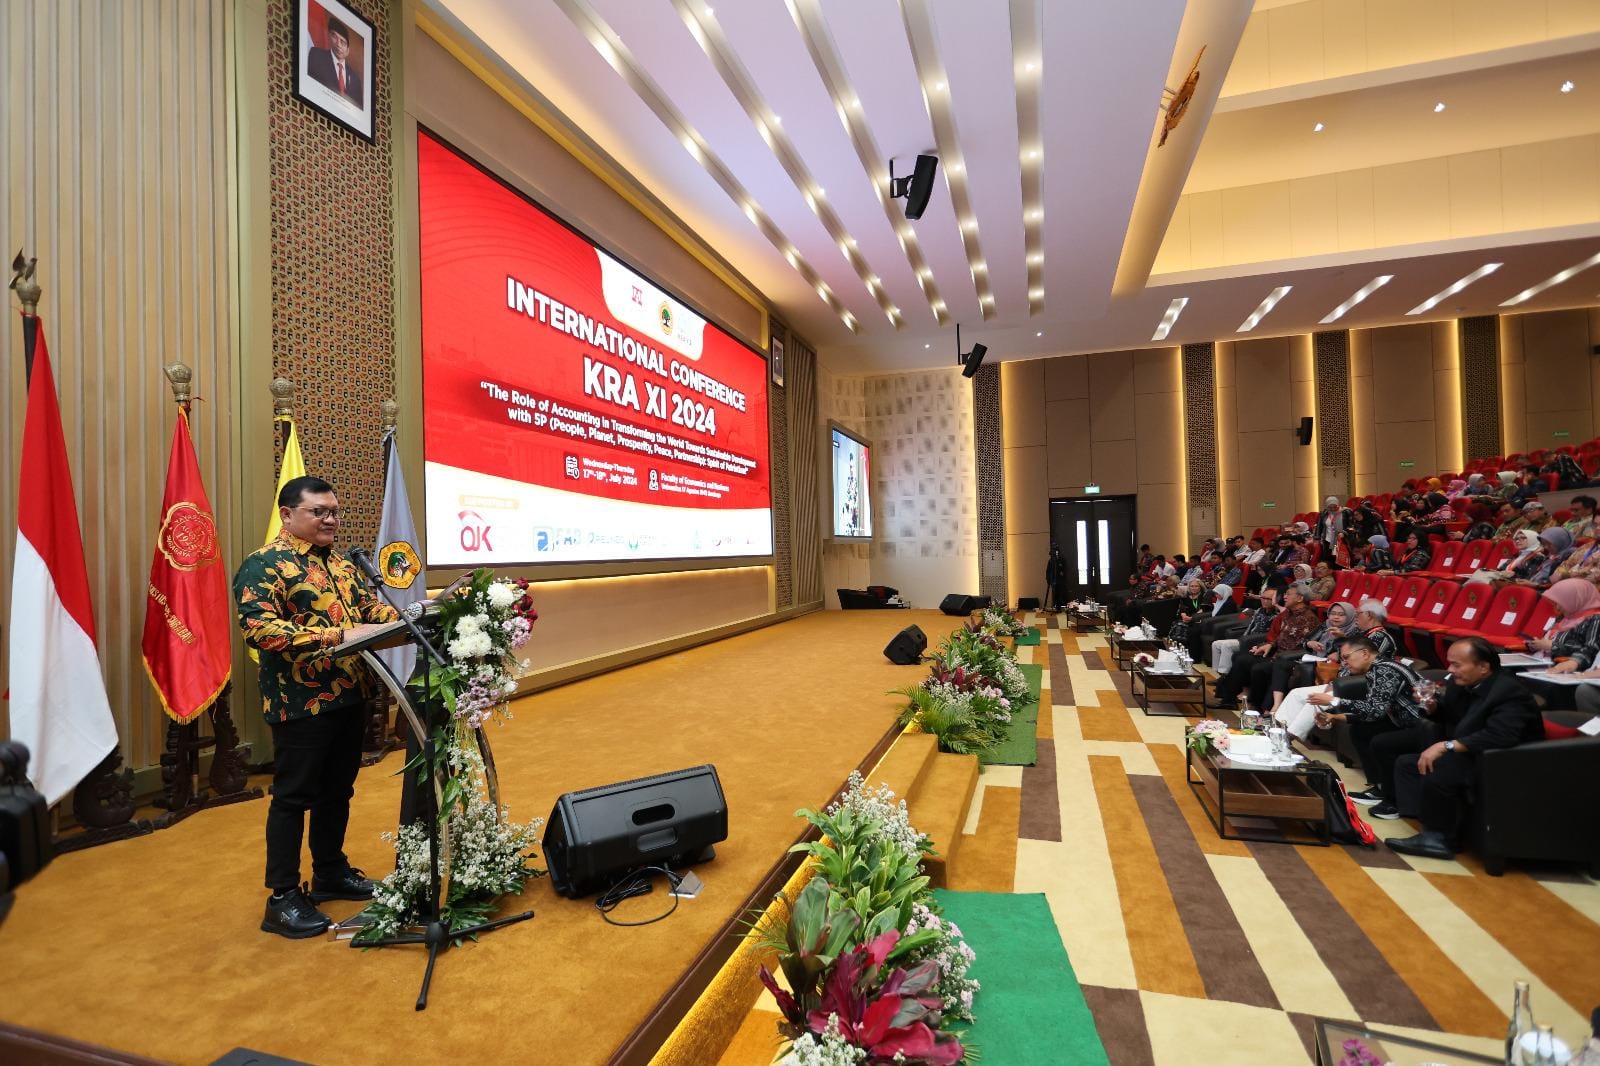 Gelar Konferensi Internasional KRA XI 2024, Untag Surabaya Hadirkan Pembicara dari Enam Negara